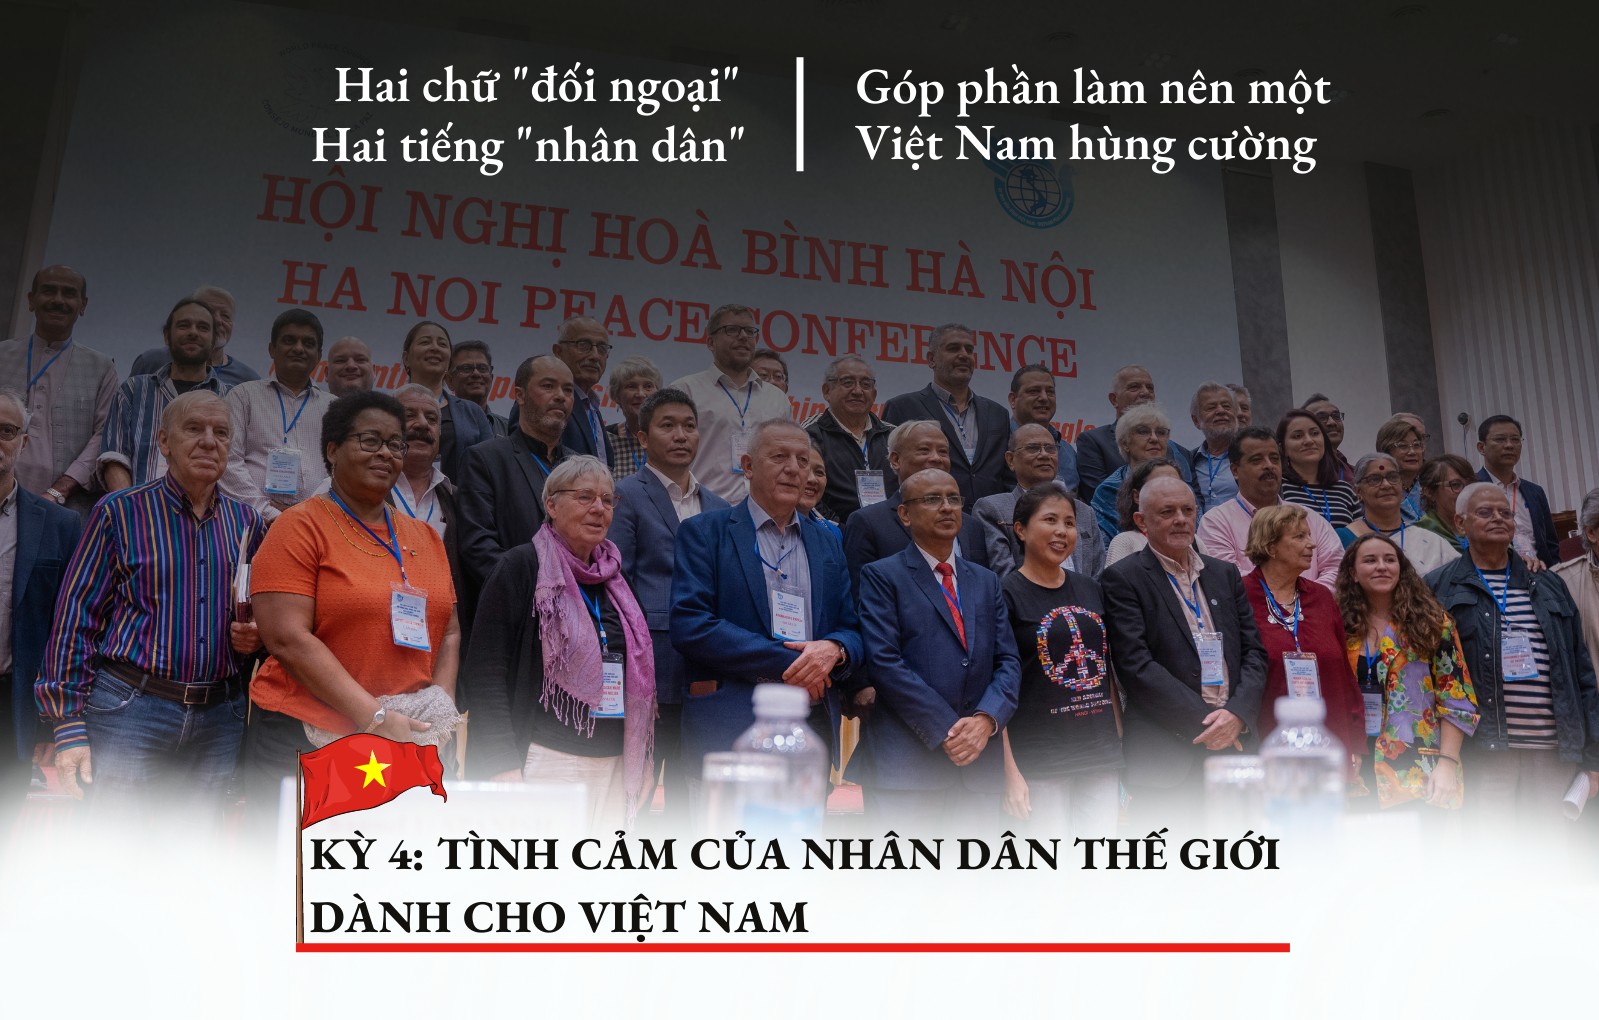 [INFOGRAPHIC] Kỳ 4: Tình cảm của nhân dân thế giới dành cho Việt Nam